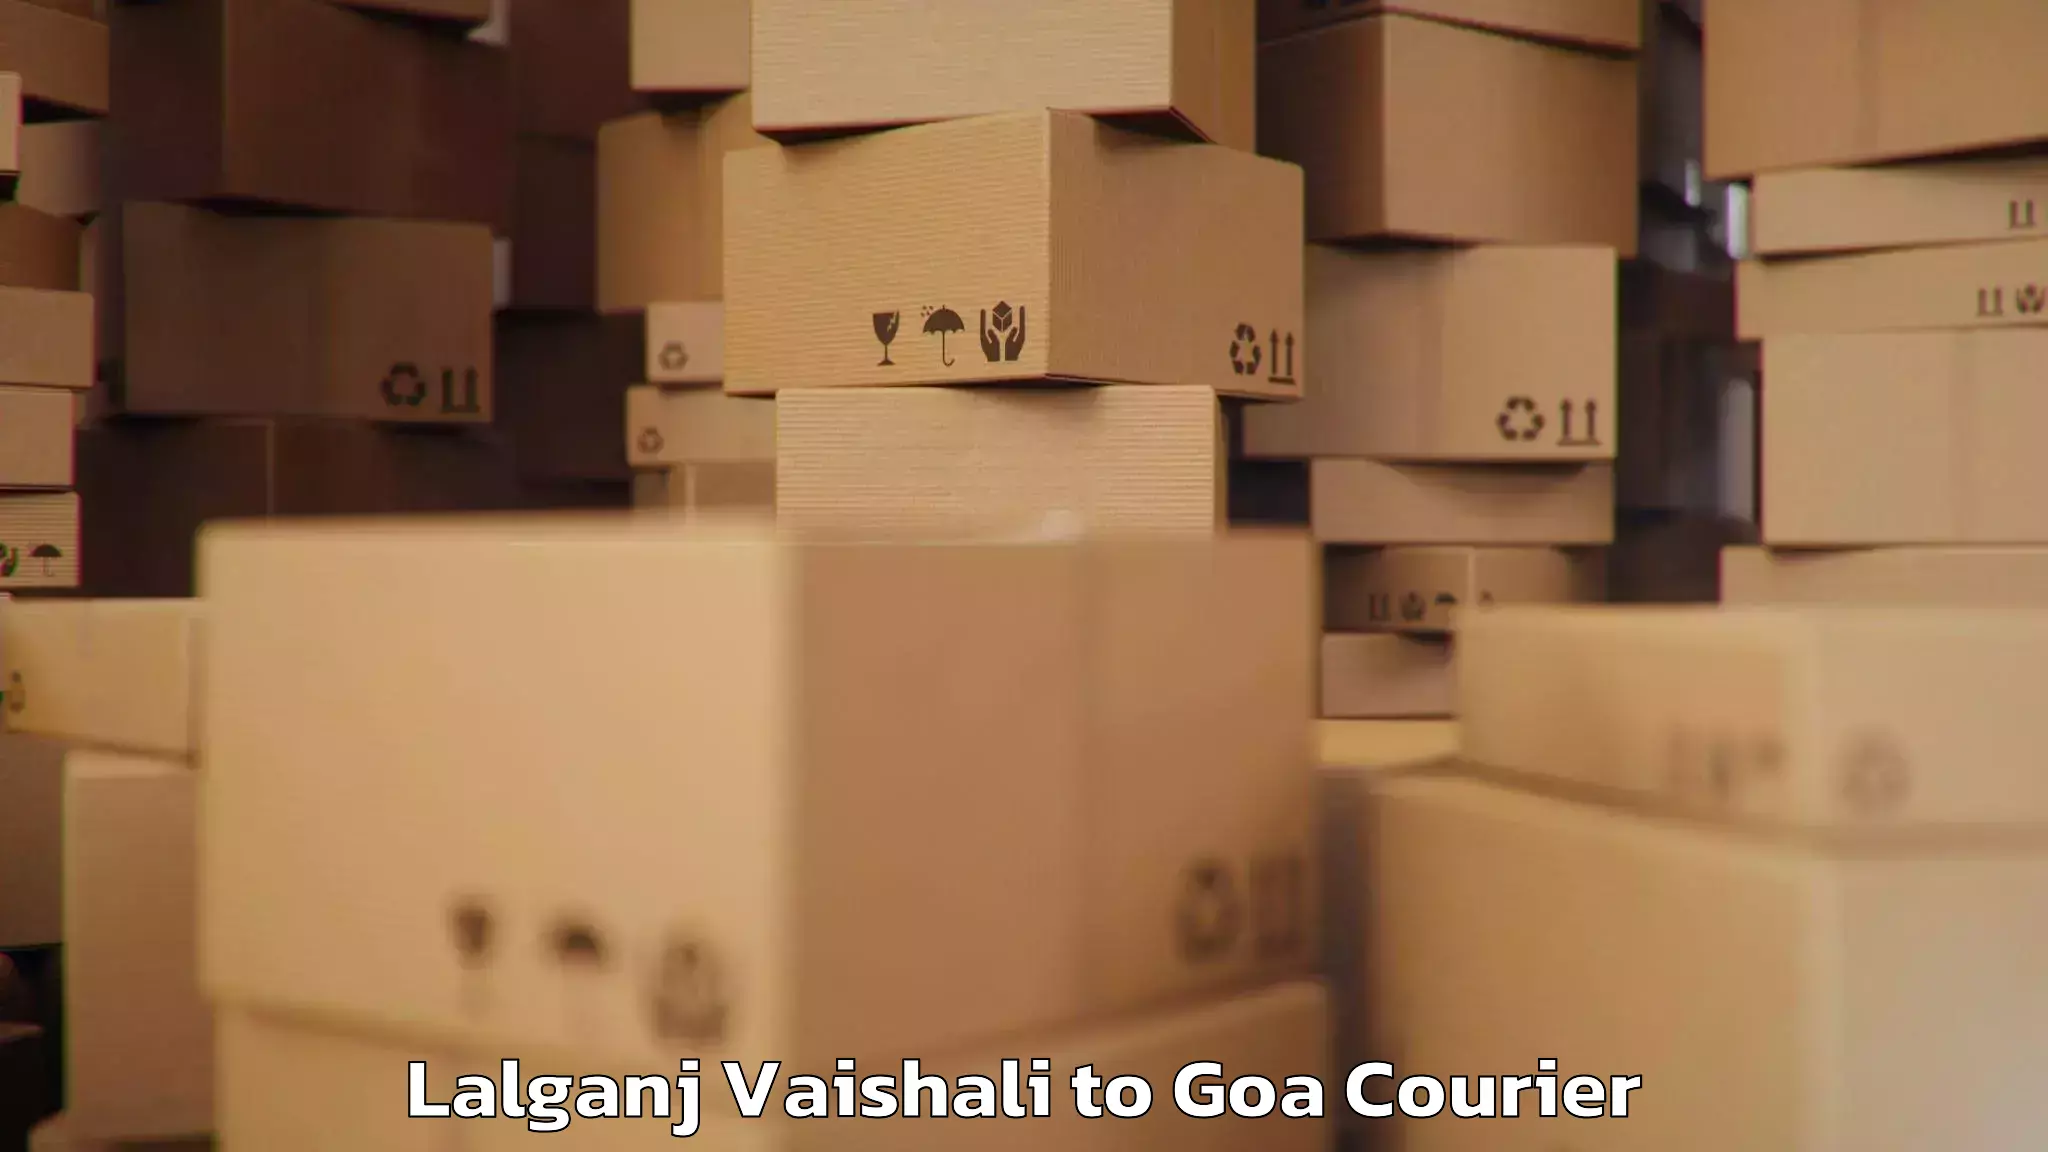 Luggage forwarding service Lalganj Vaishali to Goa